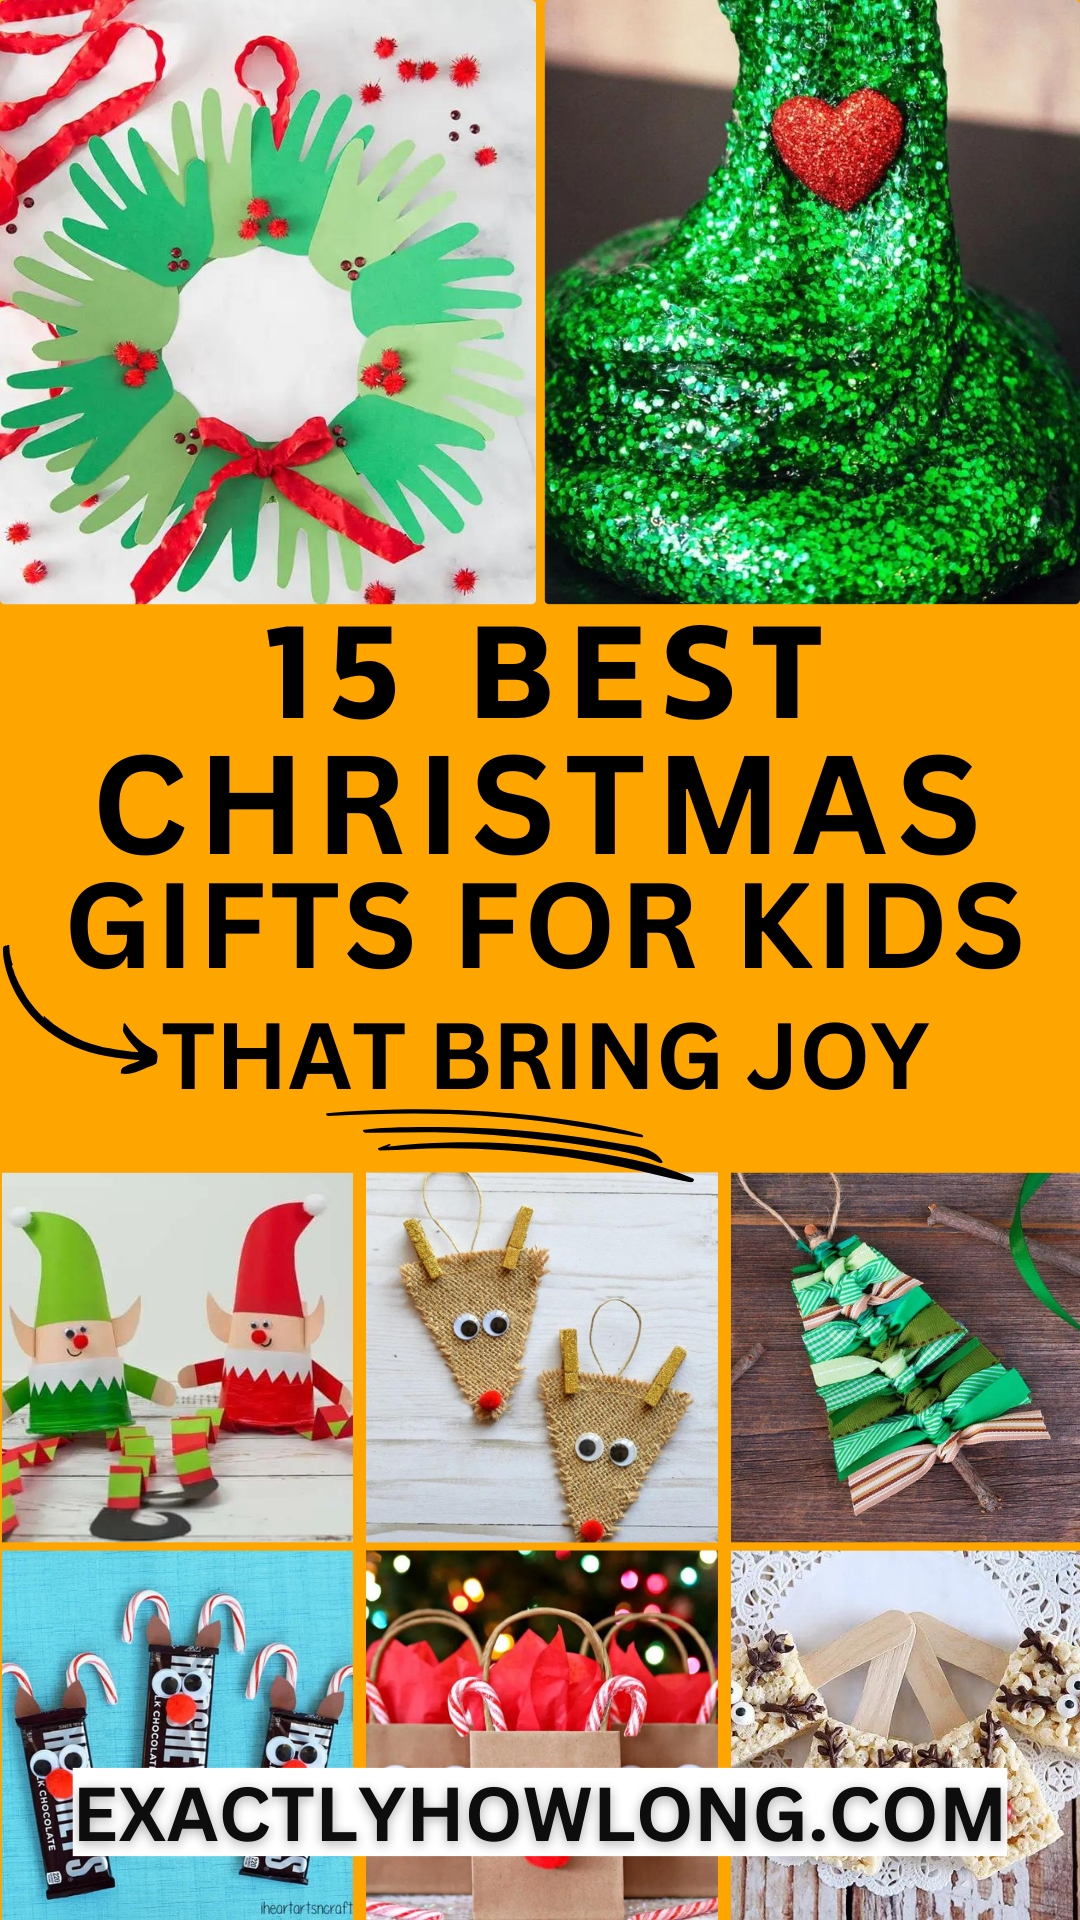 Preiswerte DIY-Weihnachtsgeschenke für Kinder, die mit kleinem Budget basteln können